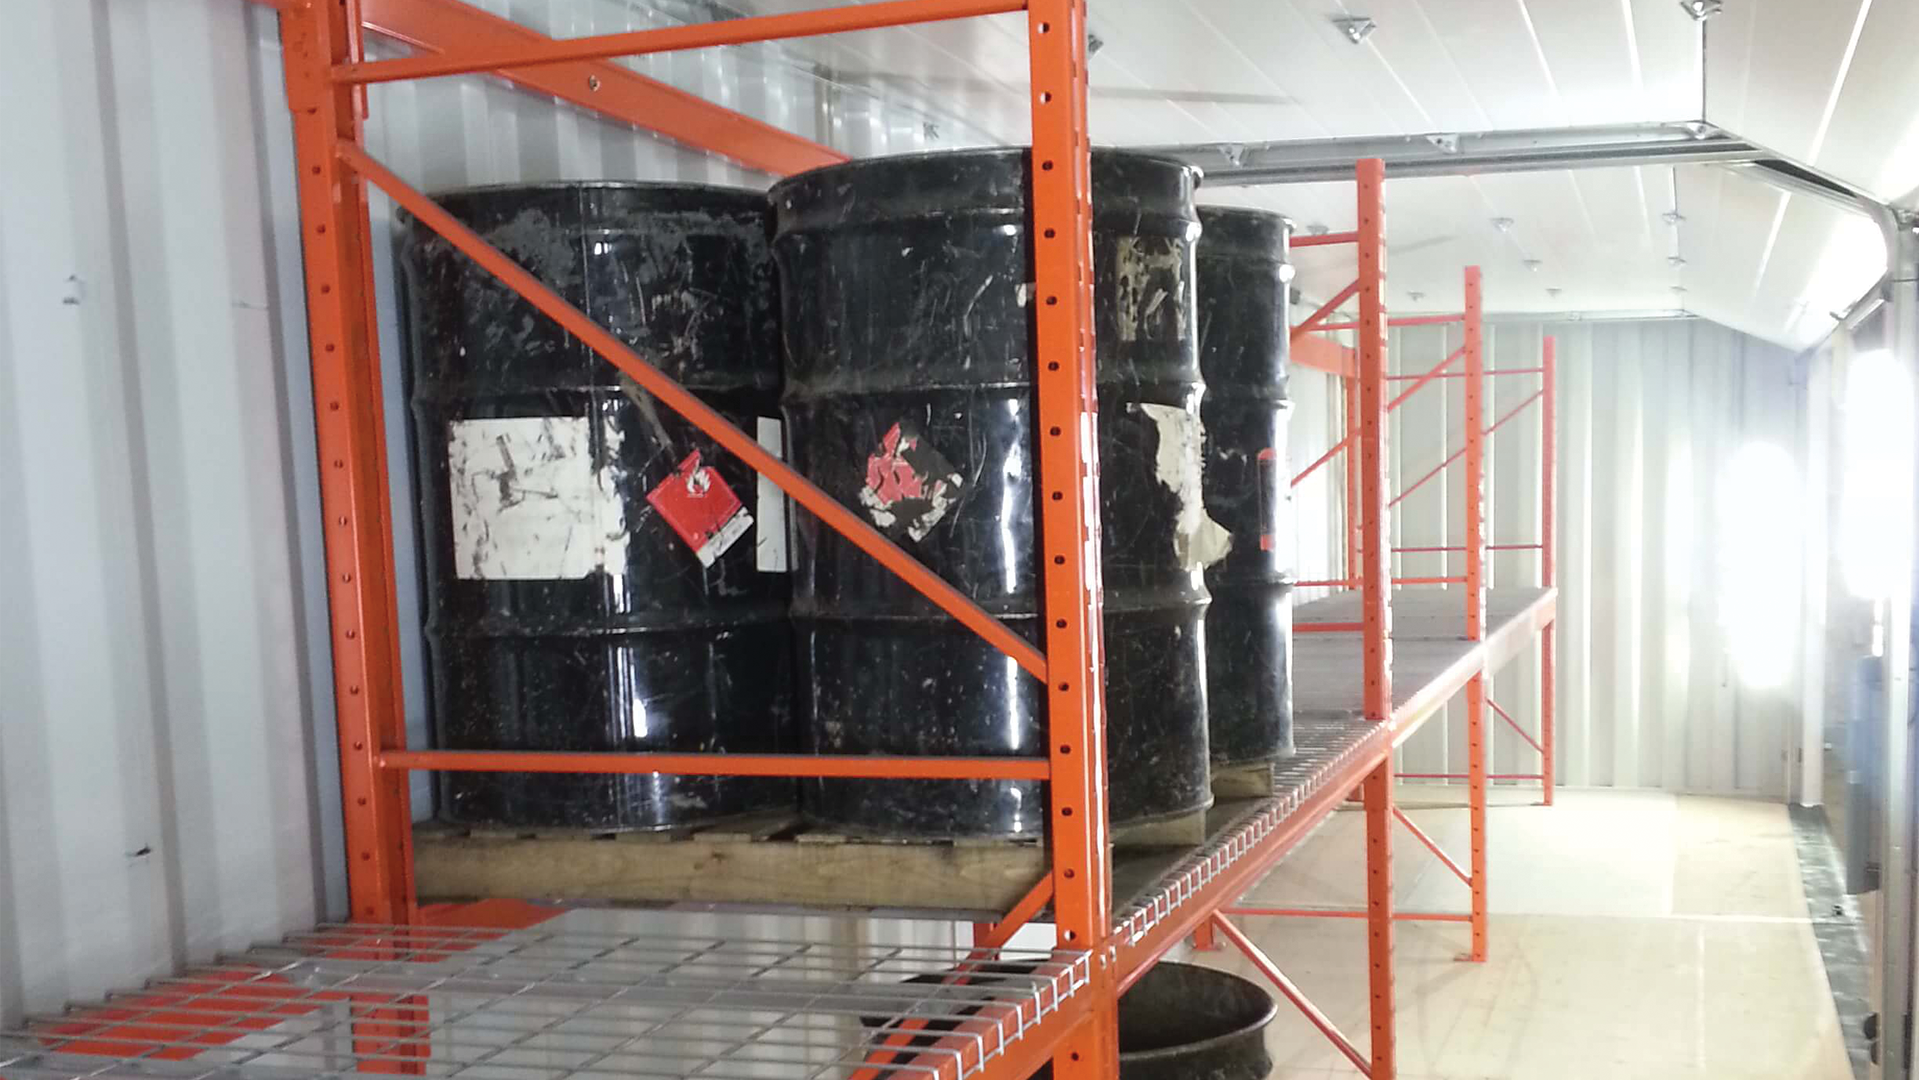 Black oil barrels sitting on orange shelf inside of container